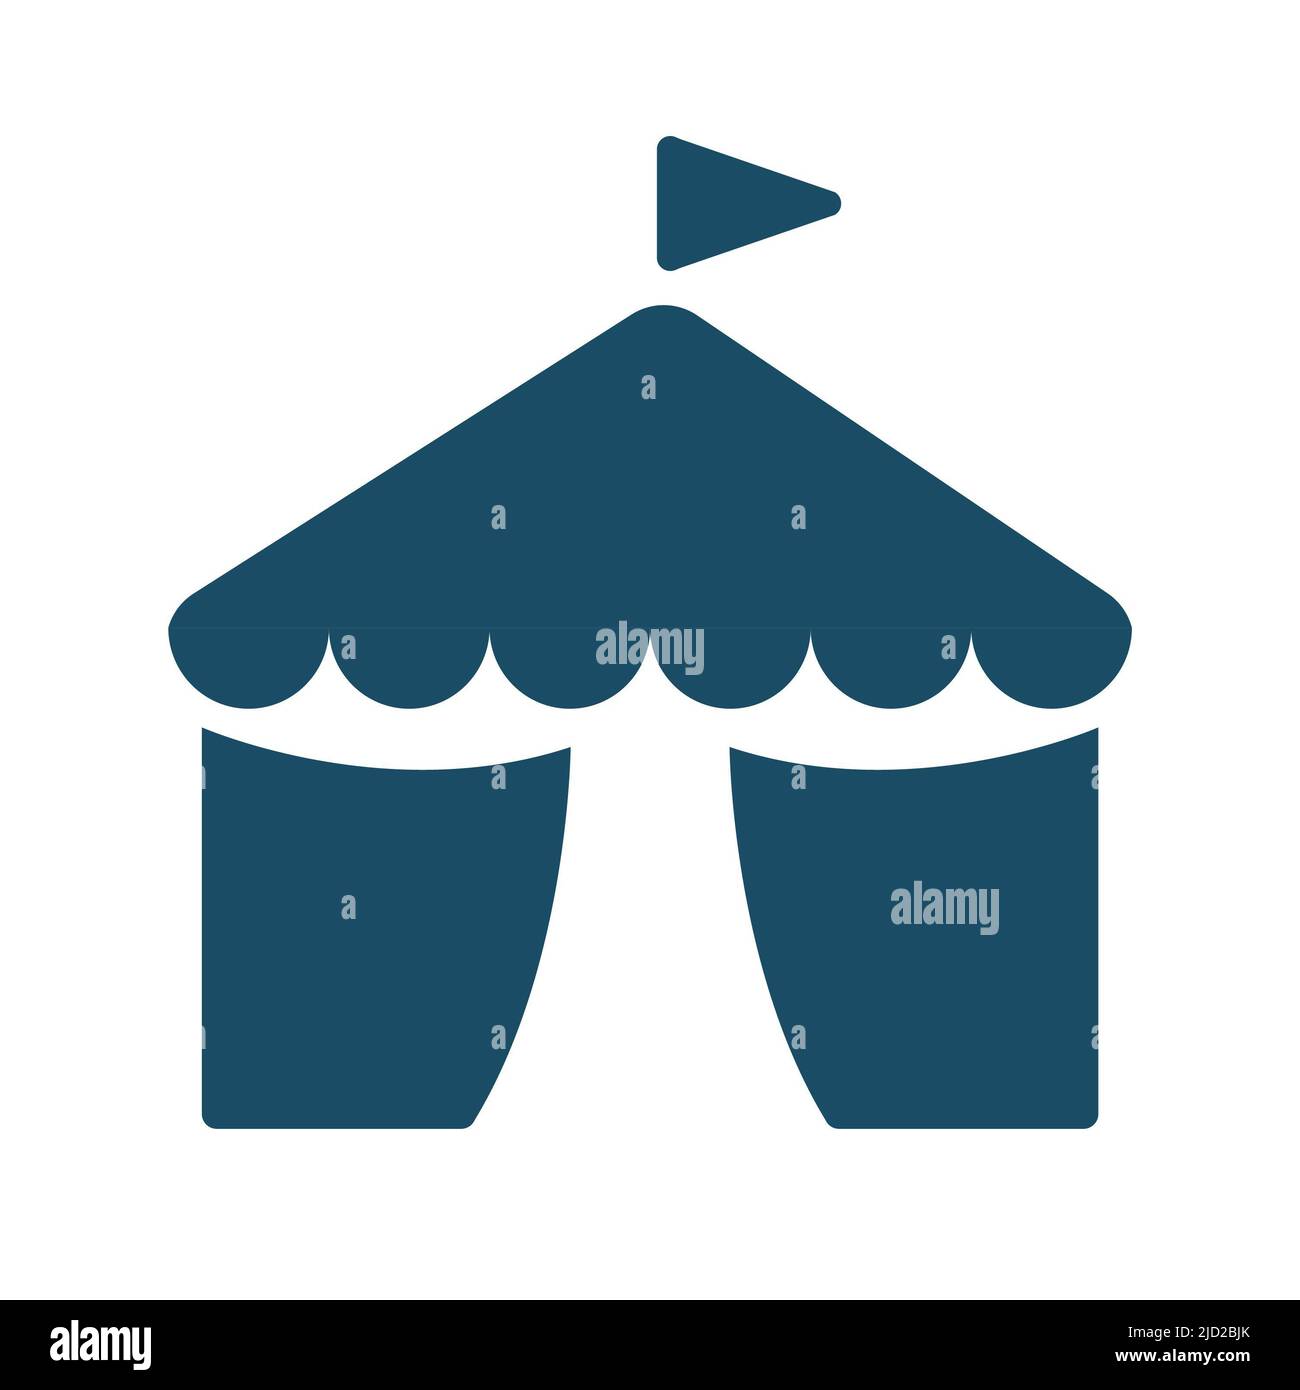 Hochwertige dunkelblaue flache Zirkuszelt-Ikone. Piktogramm, Symbolsatz, Illustration. Nützlich für Websites, Banner, Grußkarten, Apps und Social Media po Stockfoto